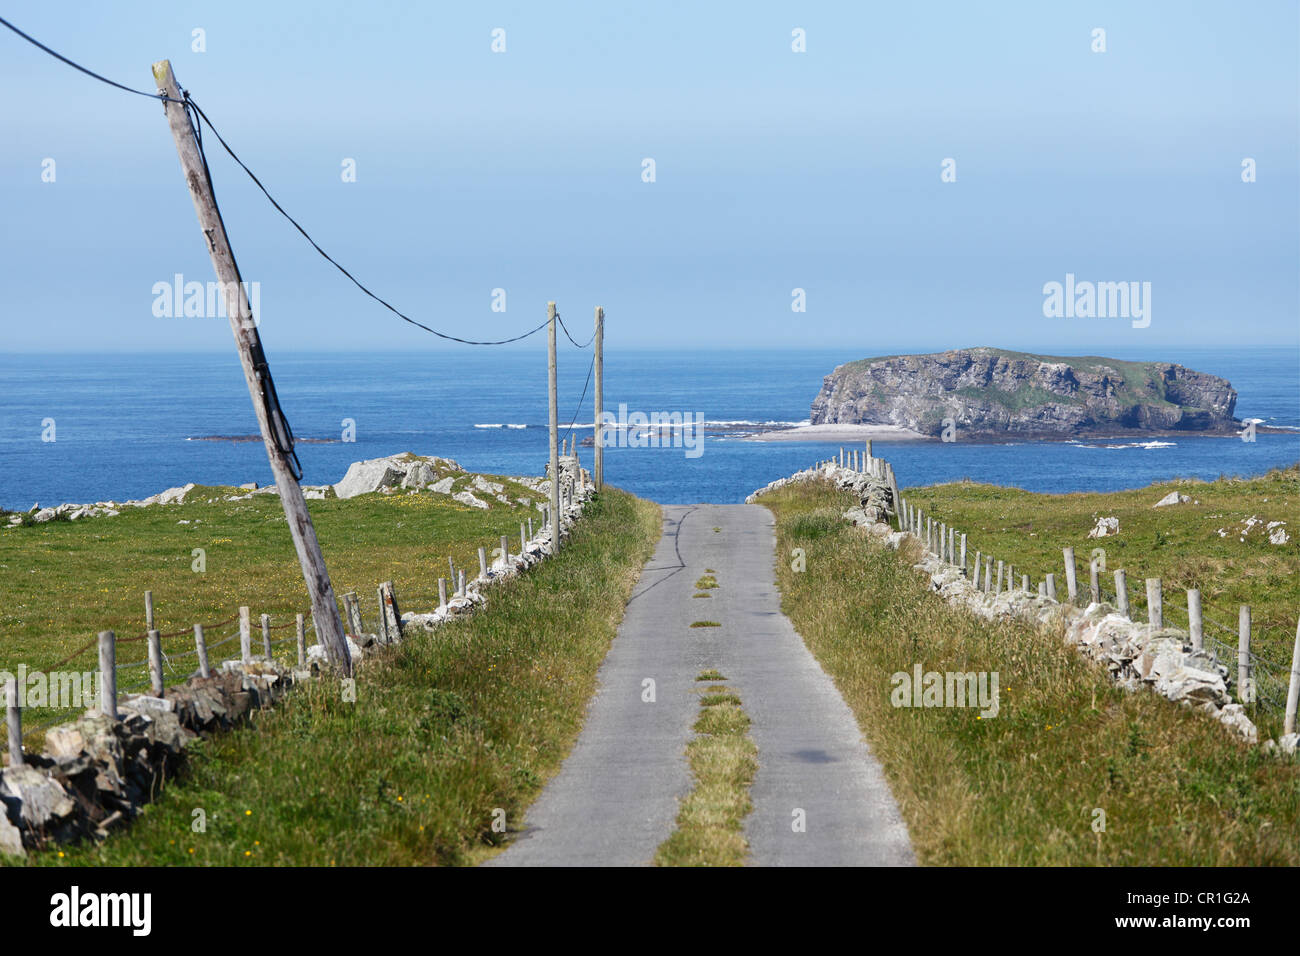 Route de campagne, à l'île de Doagh, péninsule d'Inishowen, County Donegal, Ireland, British Isles, Europe Banque D'Images